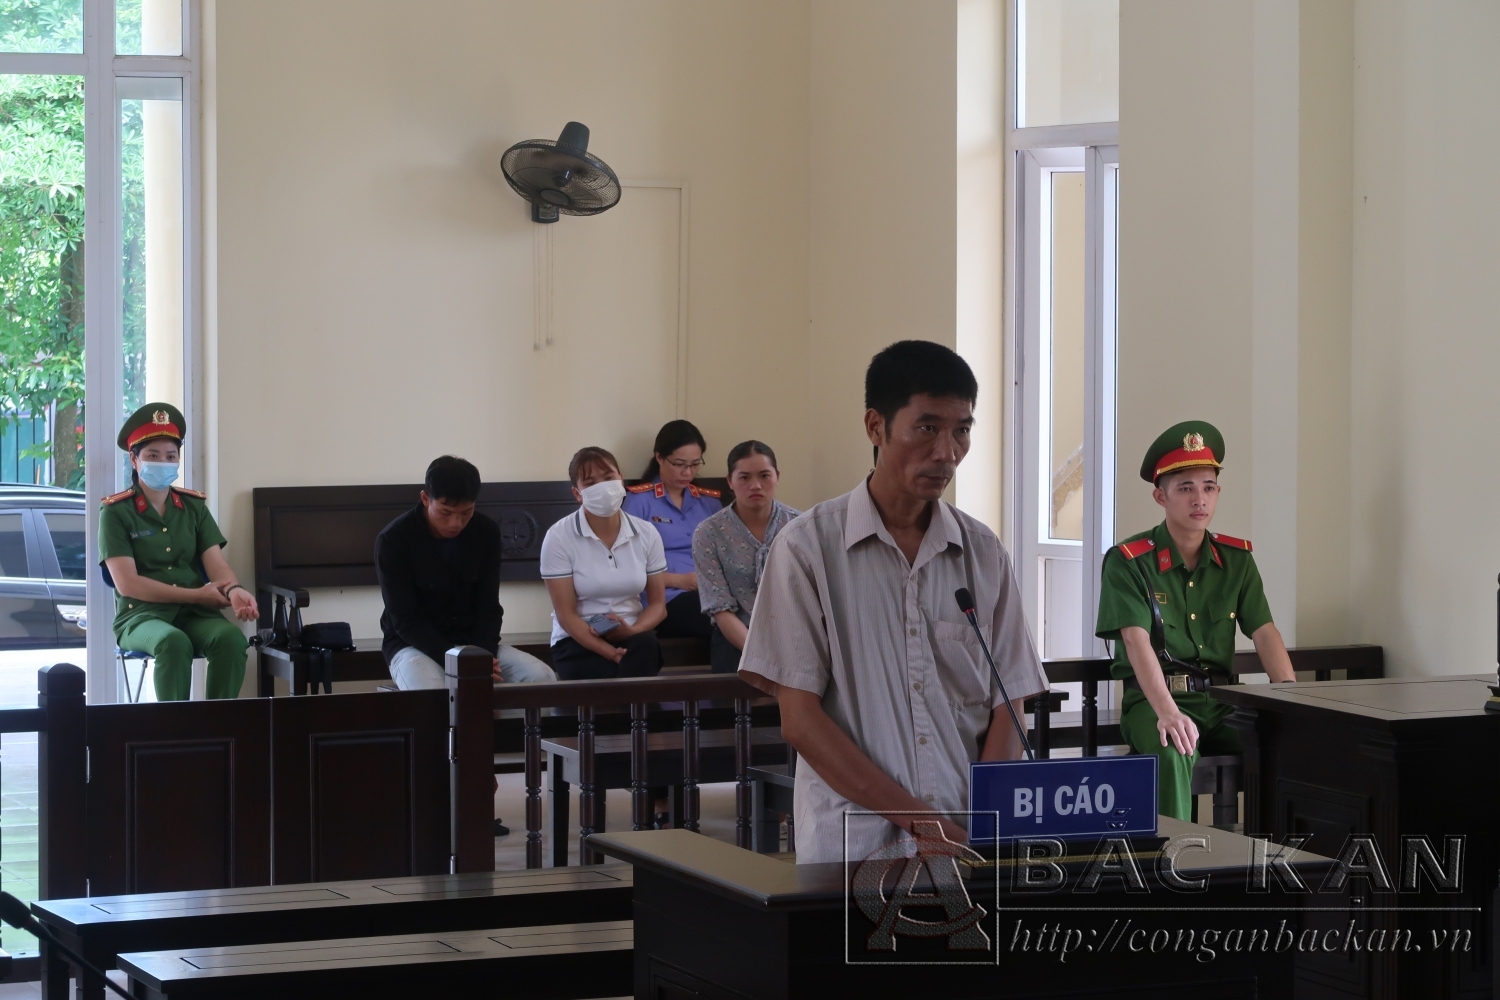 Bị cáo Nguyễn Ngọc Bảo bị xử phạt 18 tháng tù về tội “Tổ chức cho người khác nhập cảnh trái phép”